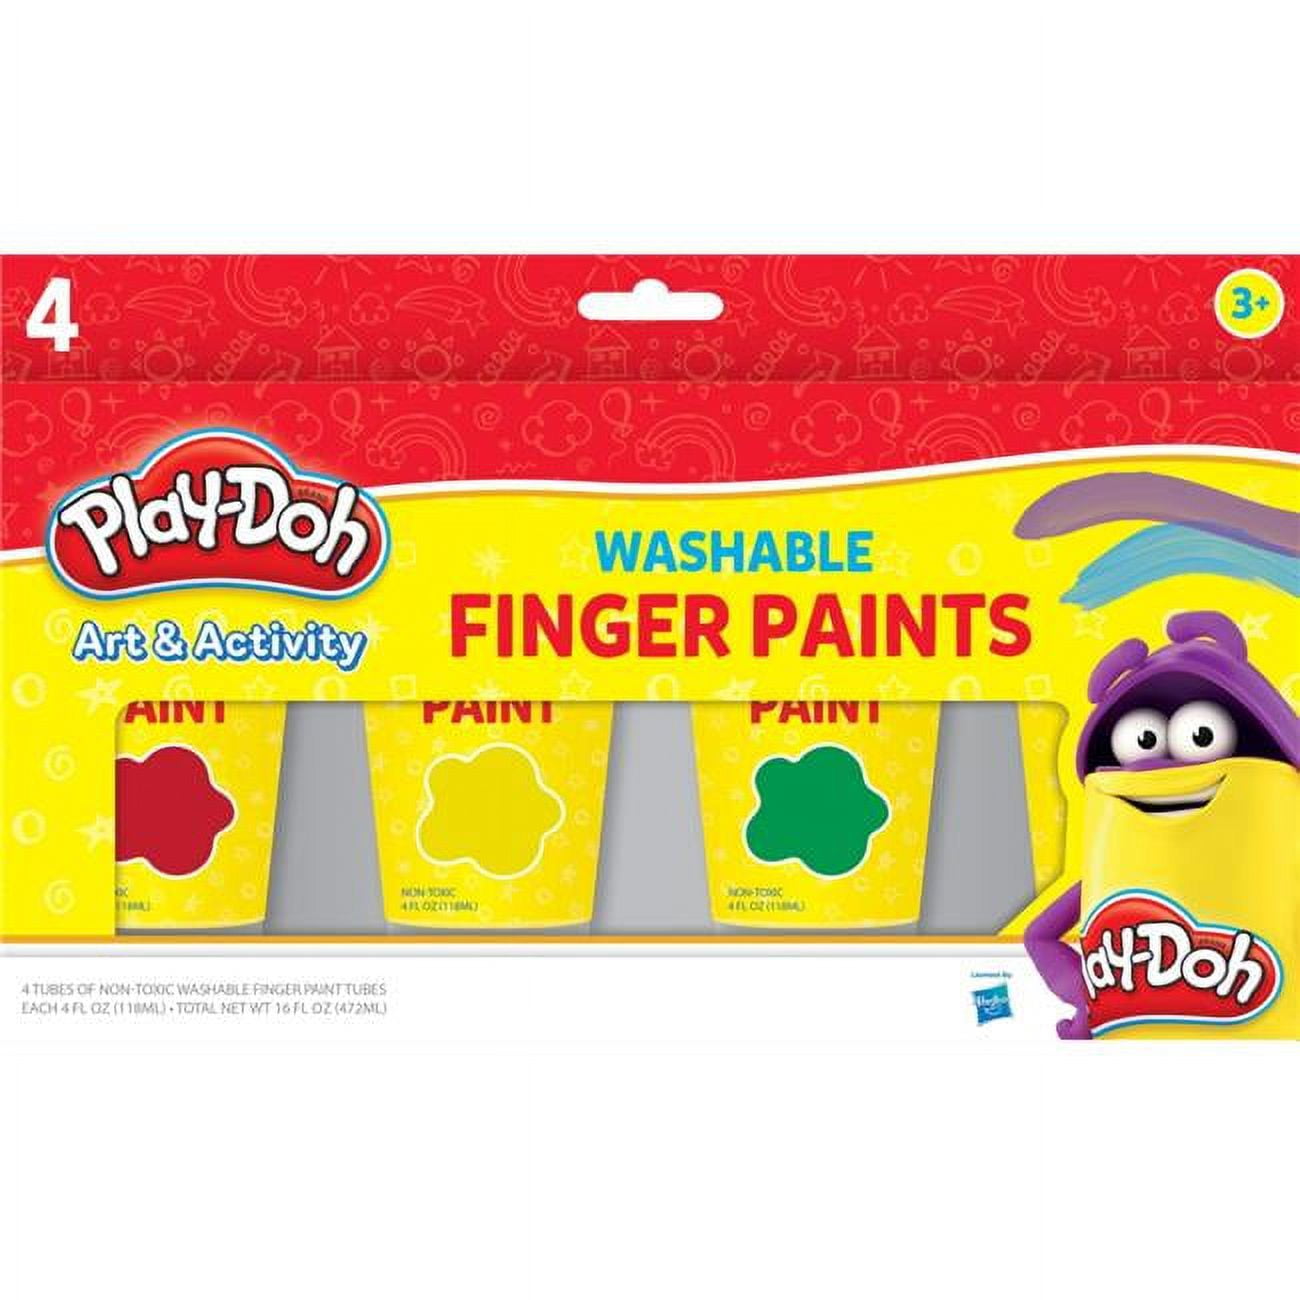 Washable Finger Paint Set, Shuttle Art 33 Pack Kids Paint Set with 10 Colors (60ml) Finger Paints Brushes, Finger Paint Pad SpongeBrushes Palette, Non